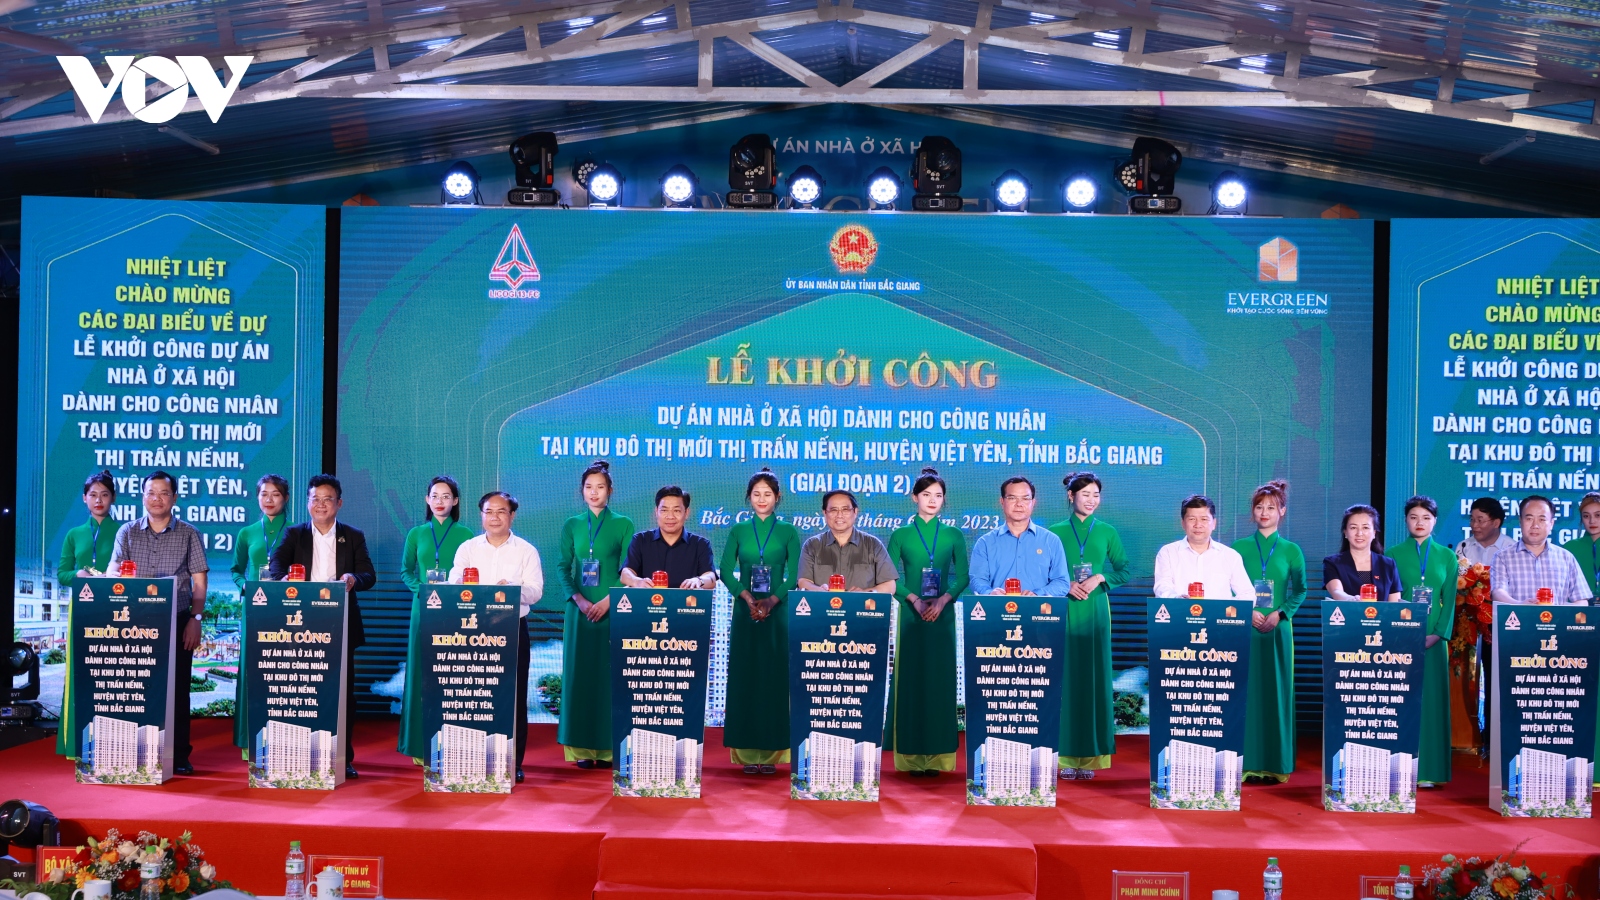 Thủ tướng dự Lễ khởi công Dự án Nhà ở xã hội dành cho công nhân tại Bắc Giang